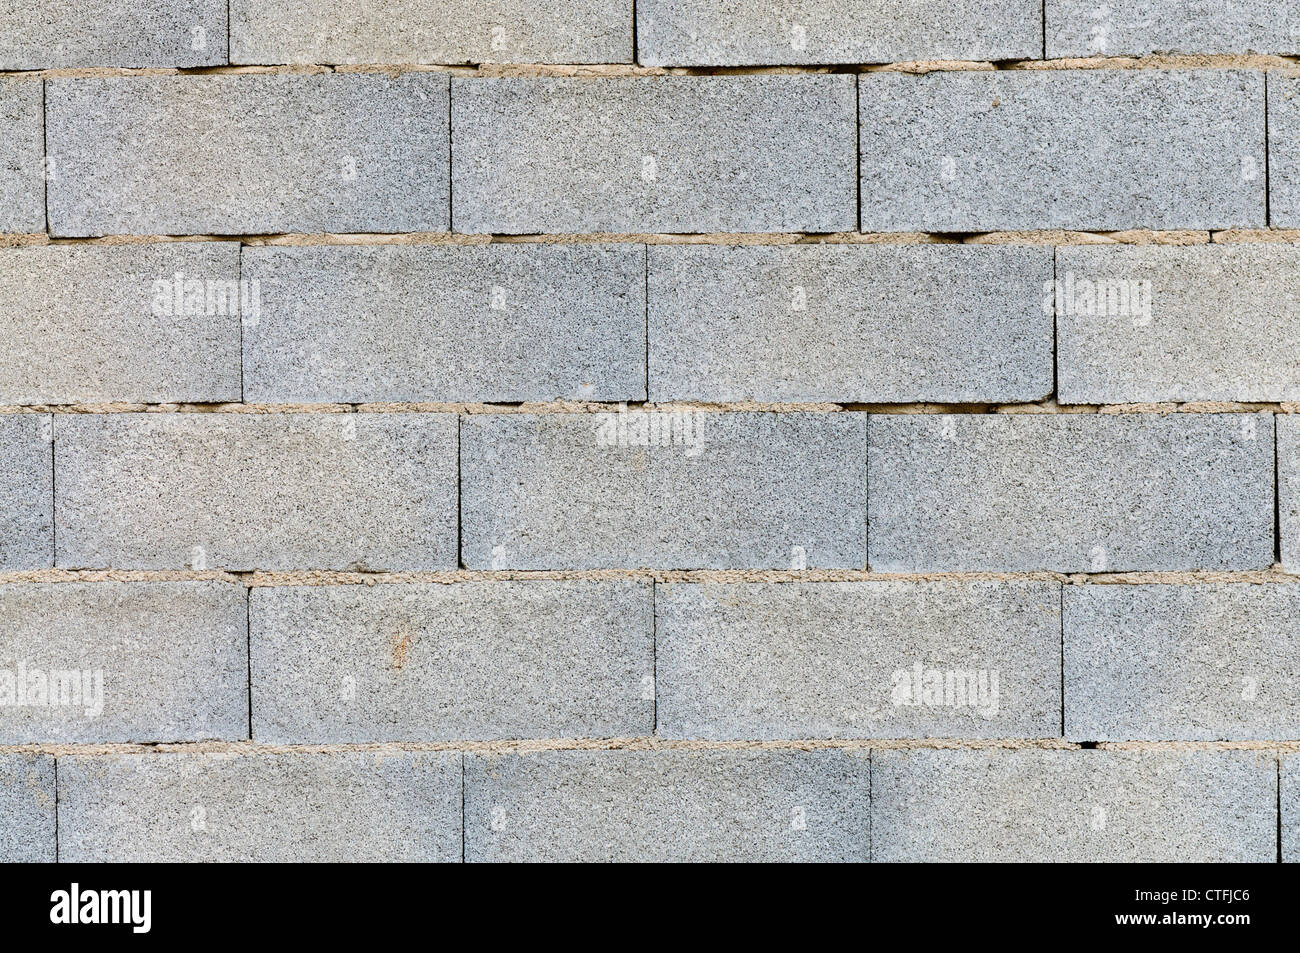 Spanischer Bau einer Brieze-Block Mauer Ziegel zeigen auf einem armen Mörtelbett aber keine interspacial Mörtel gelegt Stockfoto